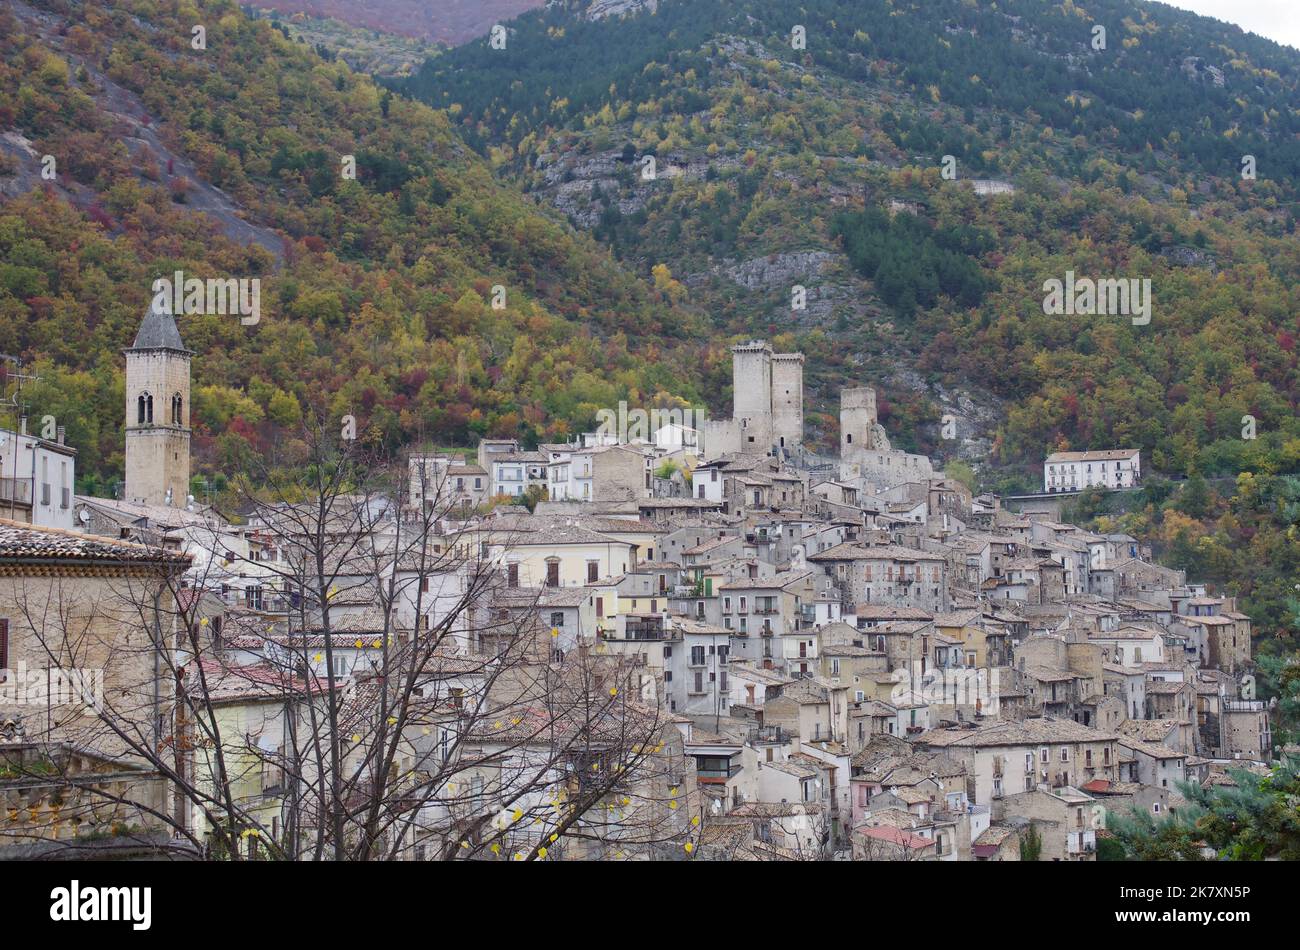 Aperçu de Pacentro (AQ) - un des plus beaux villages d'Italie: Le pays des grands-parents de la star pop Madonna - Abruzzo - Italie Banque D'Images